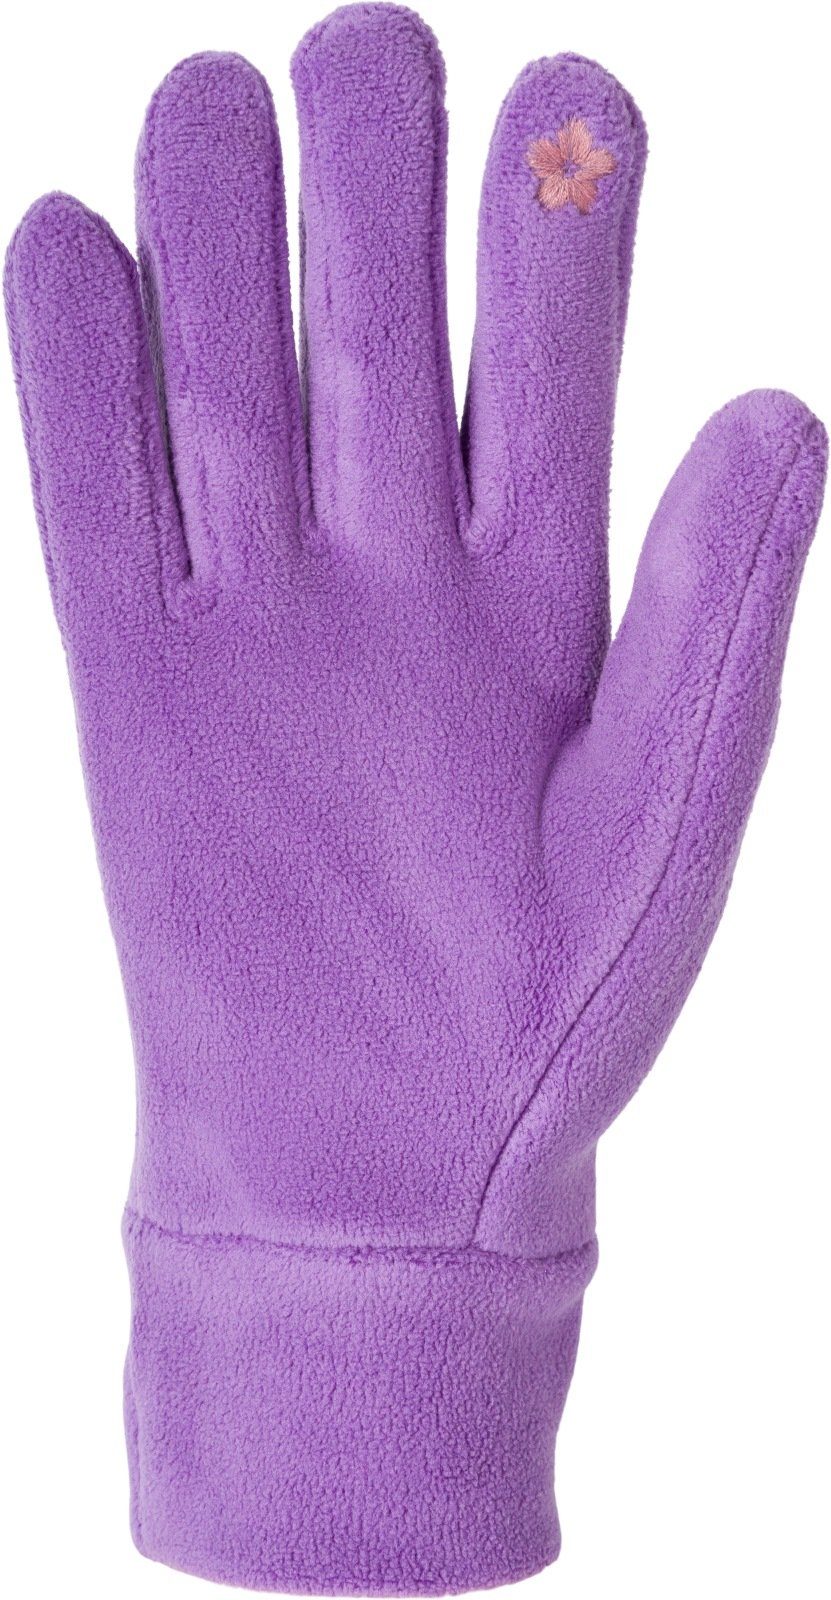 Lila Fleece Touchscreen Handschuhe Einfarbige Fleecehandschuhe styleBREAKER